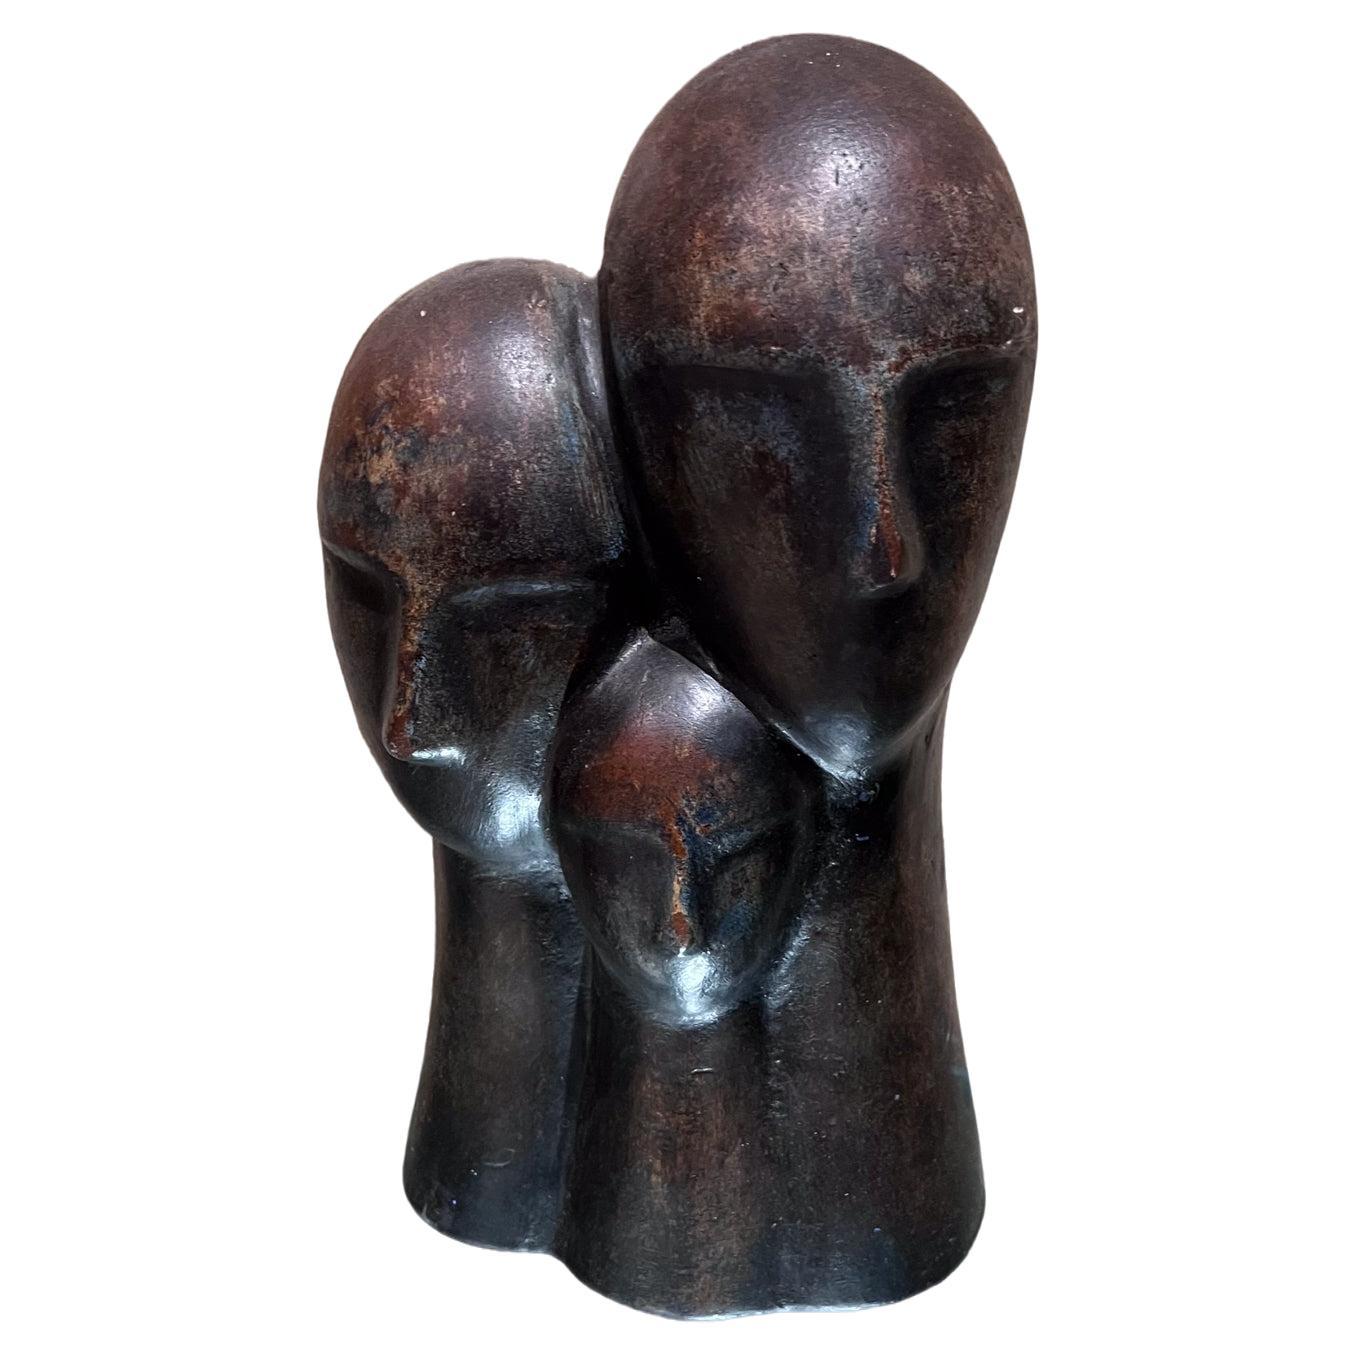 1970s Modernist 3-Head Sculpture Terracotta Bronze Art For Sale